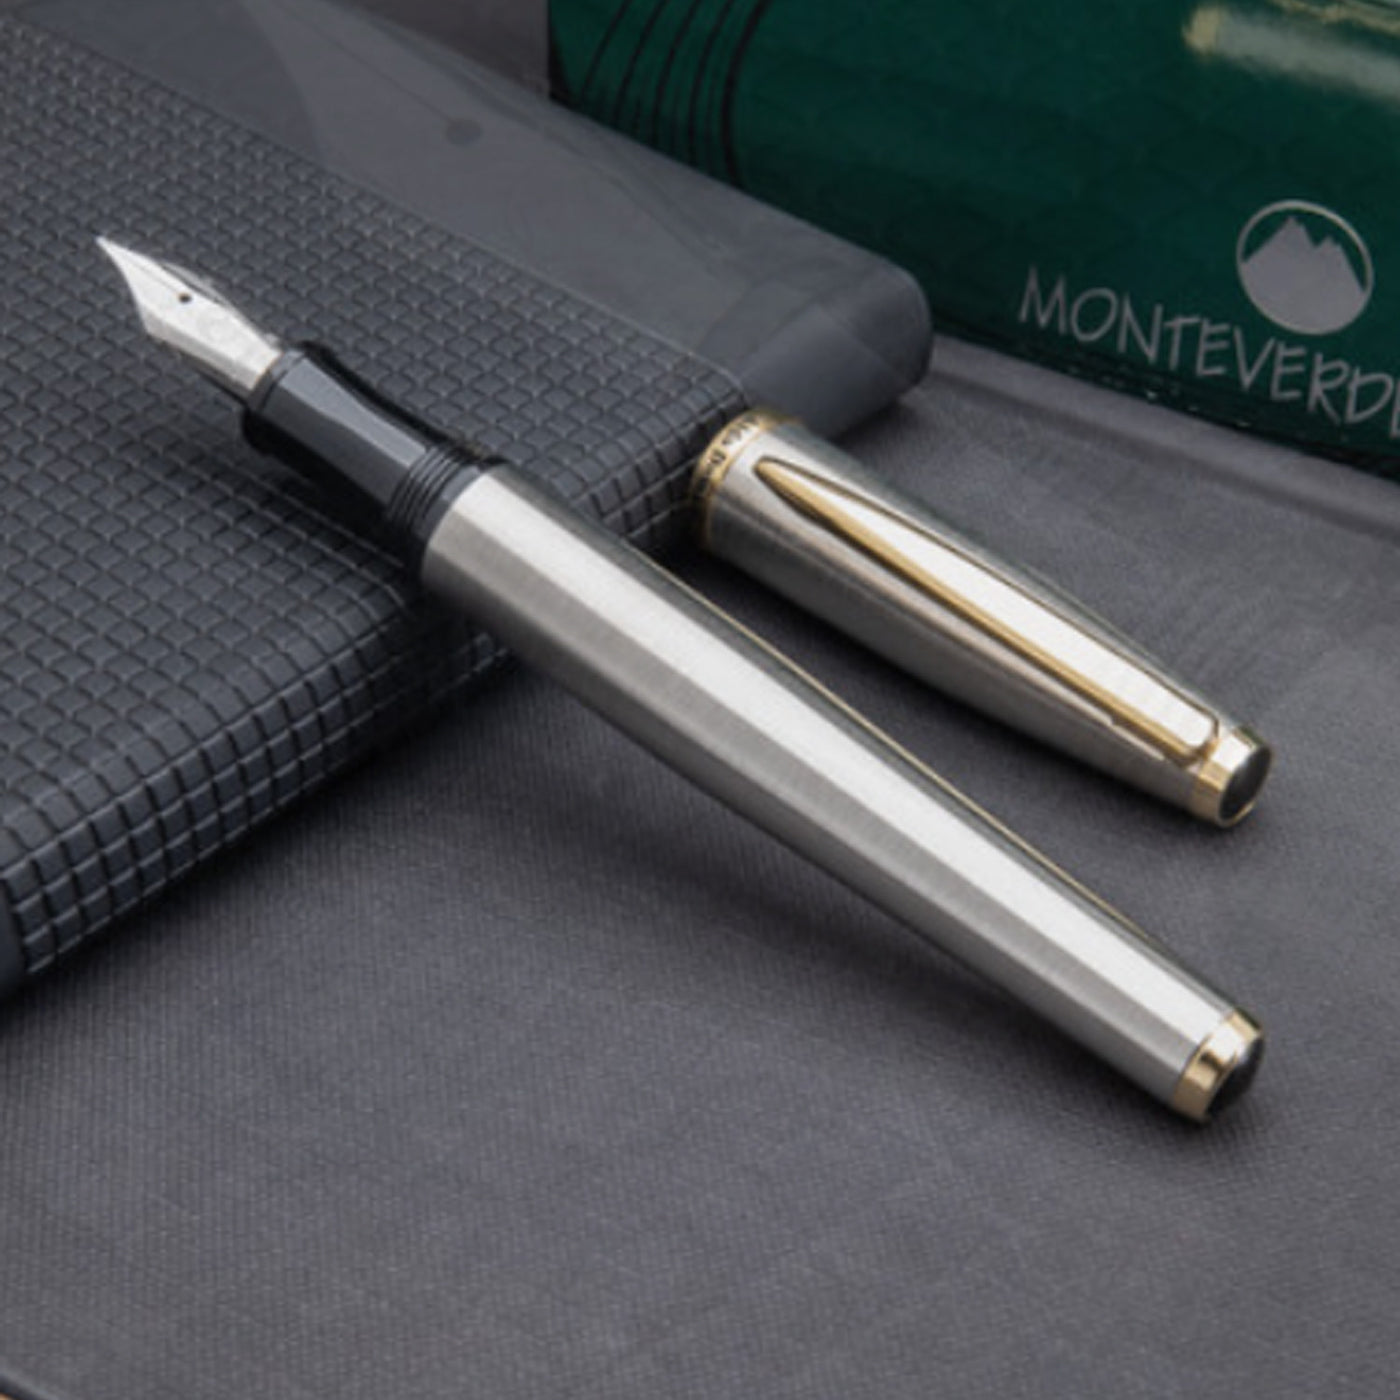 Monteverde Aldo Domani Fountain Pen - Brushed Steel GT 2